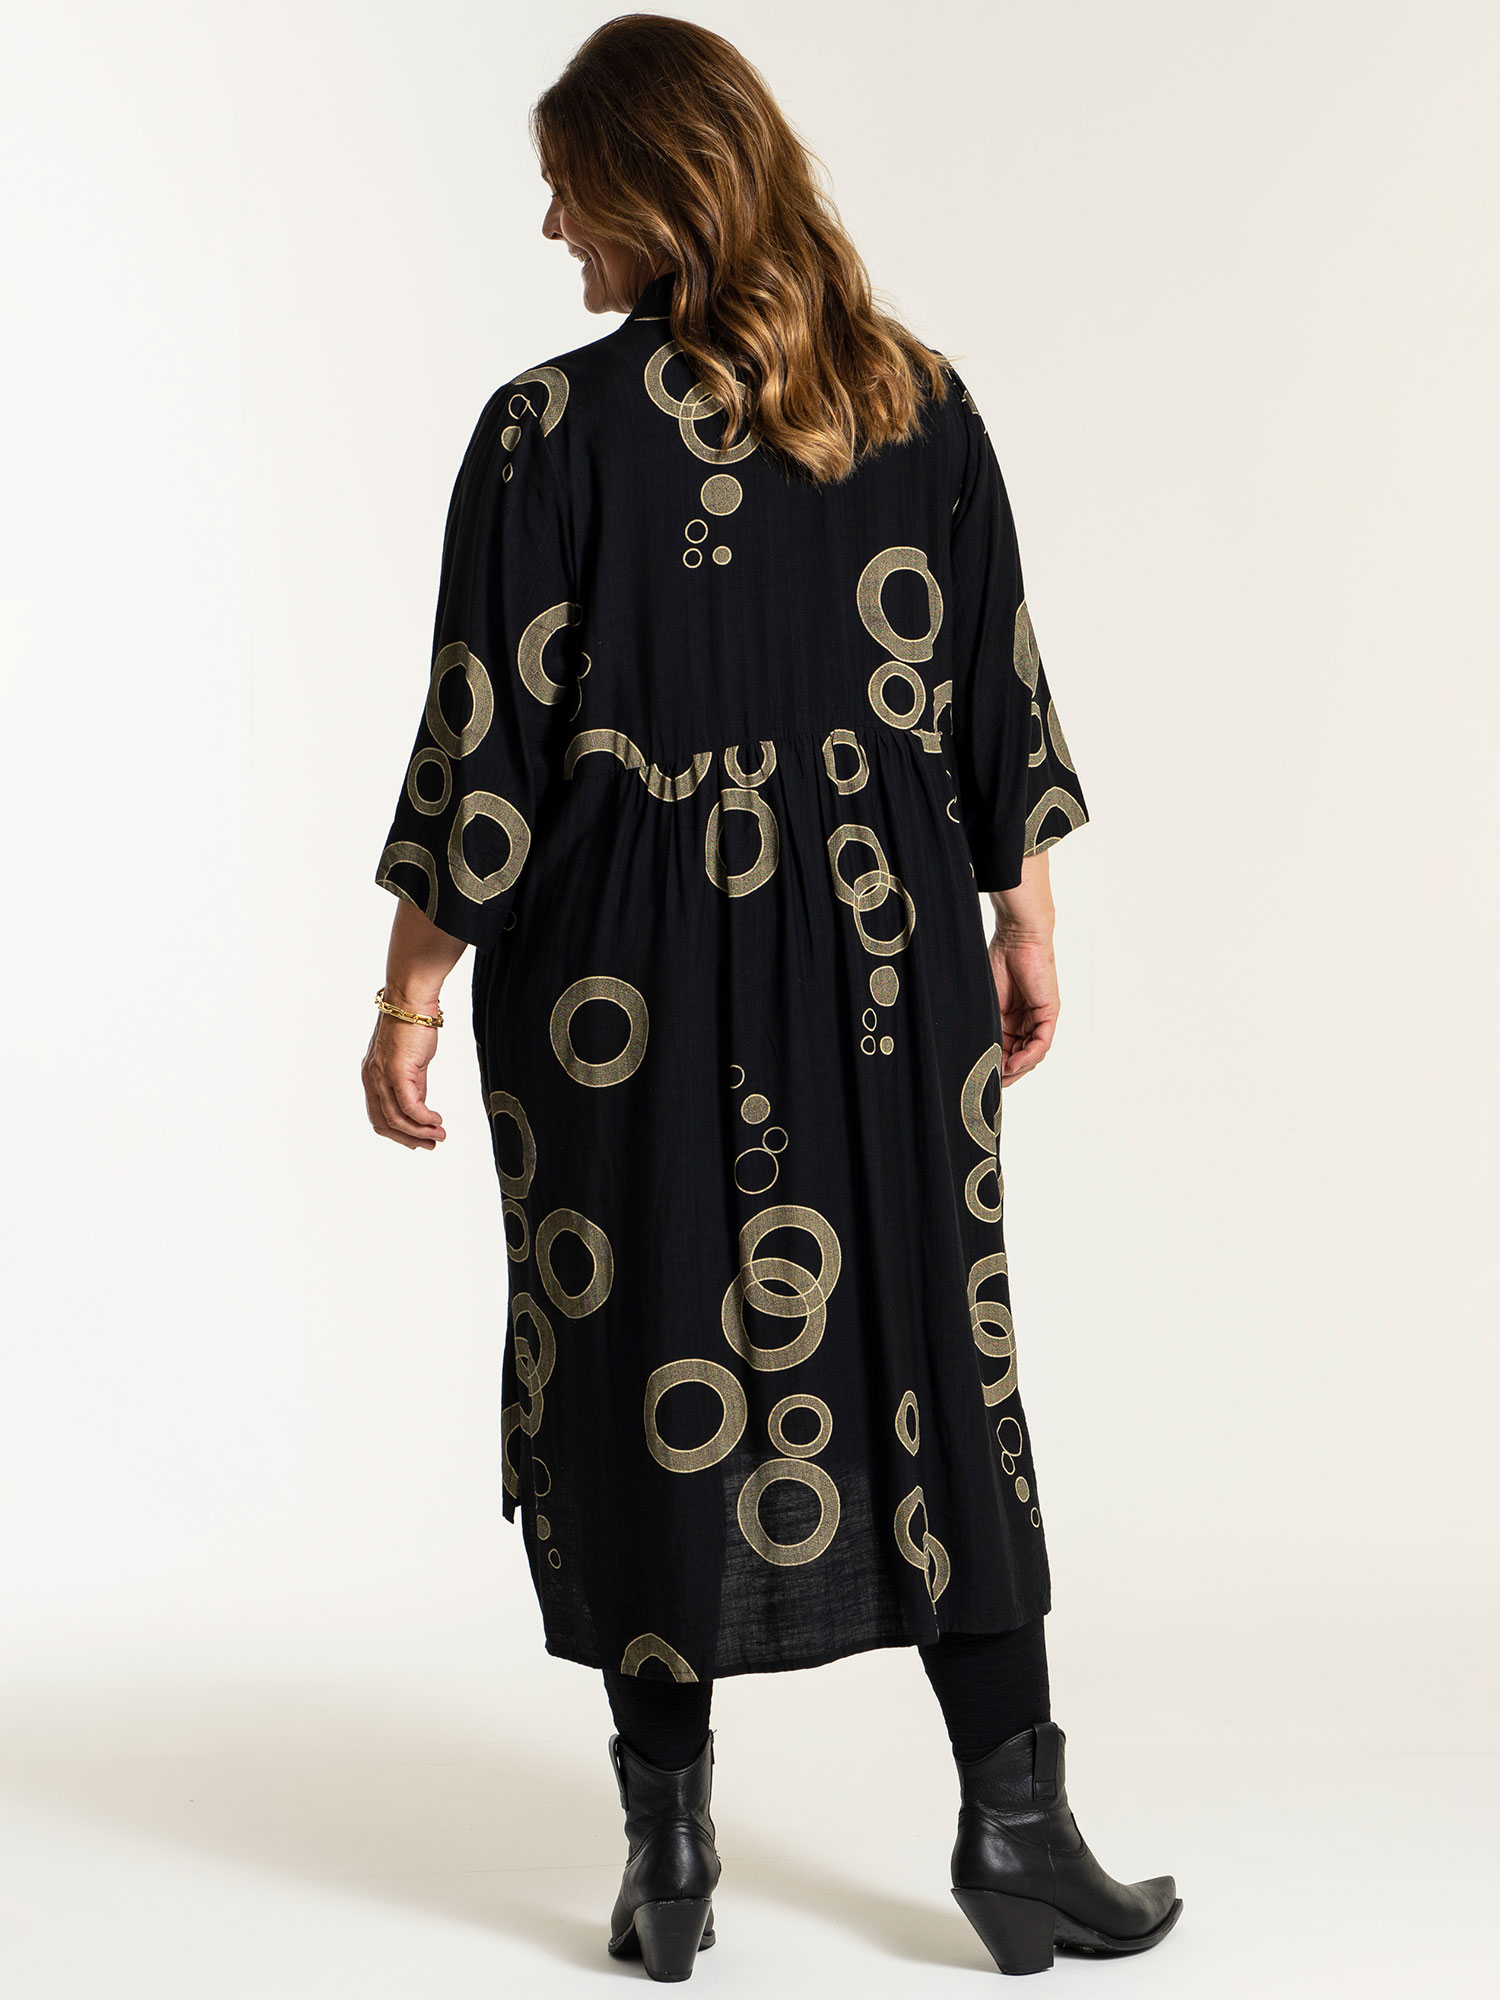 SUSANNE - Sort viskose kjole med beige mønster fra Gozzip